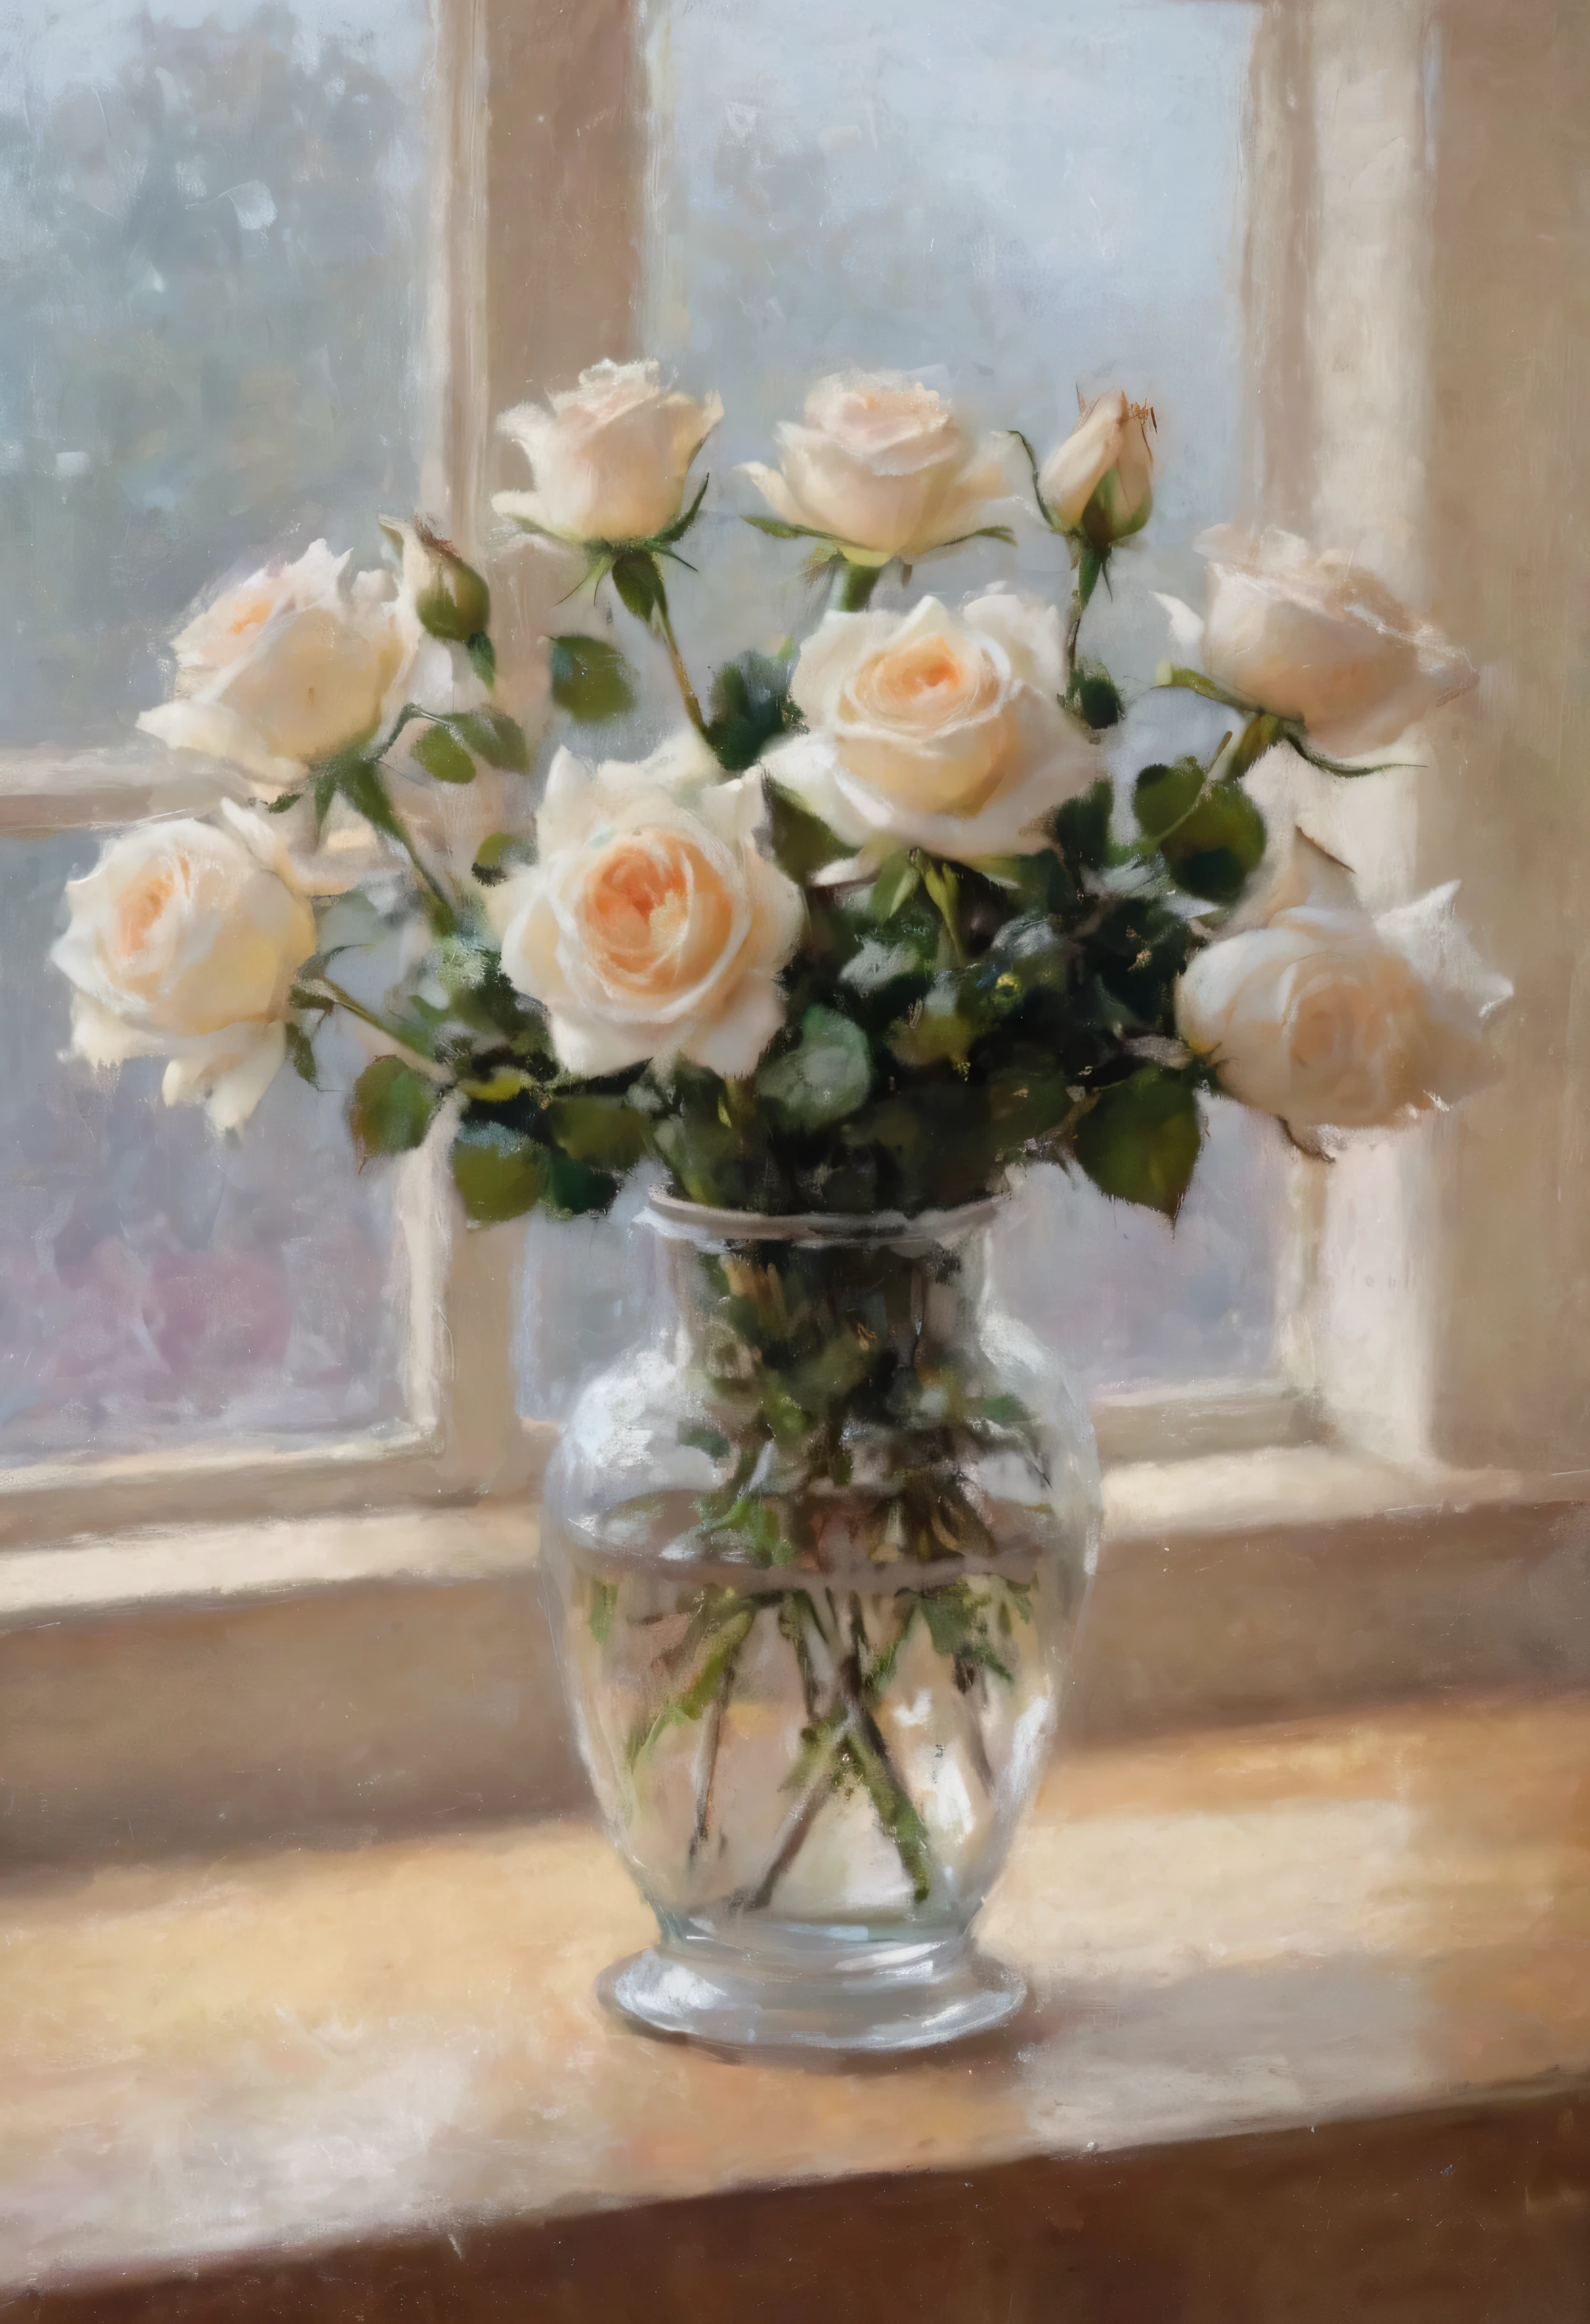 [最好的品質,超詳細],(昂貴的,精美的:1.1),(實際的,photo實際的:1.37),窗邊美麗細緻的白玫瑰, 切割水晶花瓶,柔和的燈光,溫柔的陰影,鮮豔的色彩,精緻的花瓣,精緻細節,微妙的反射,高對比度,閃閃發光的玻璃,清晰的邊緣,藝術創作,演播室燈光,華麗的中心裝飾品,浪漫氣氛